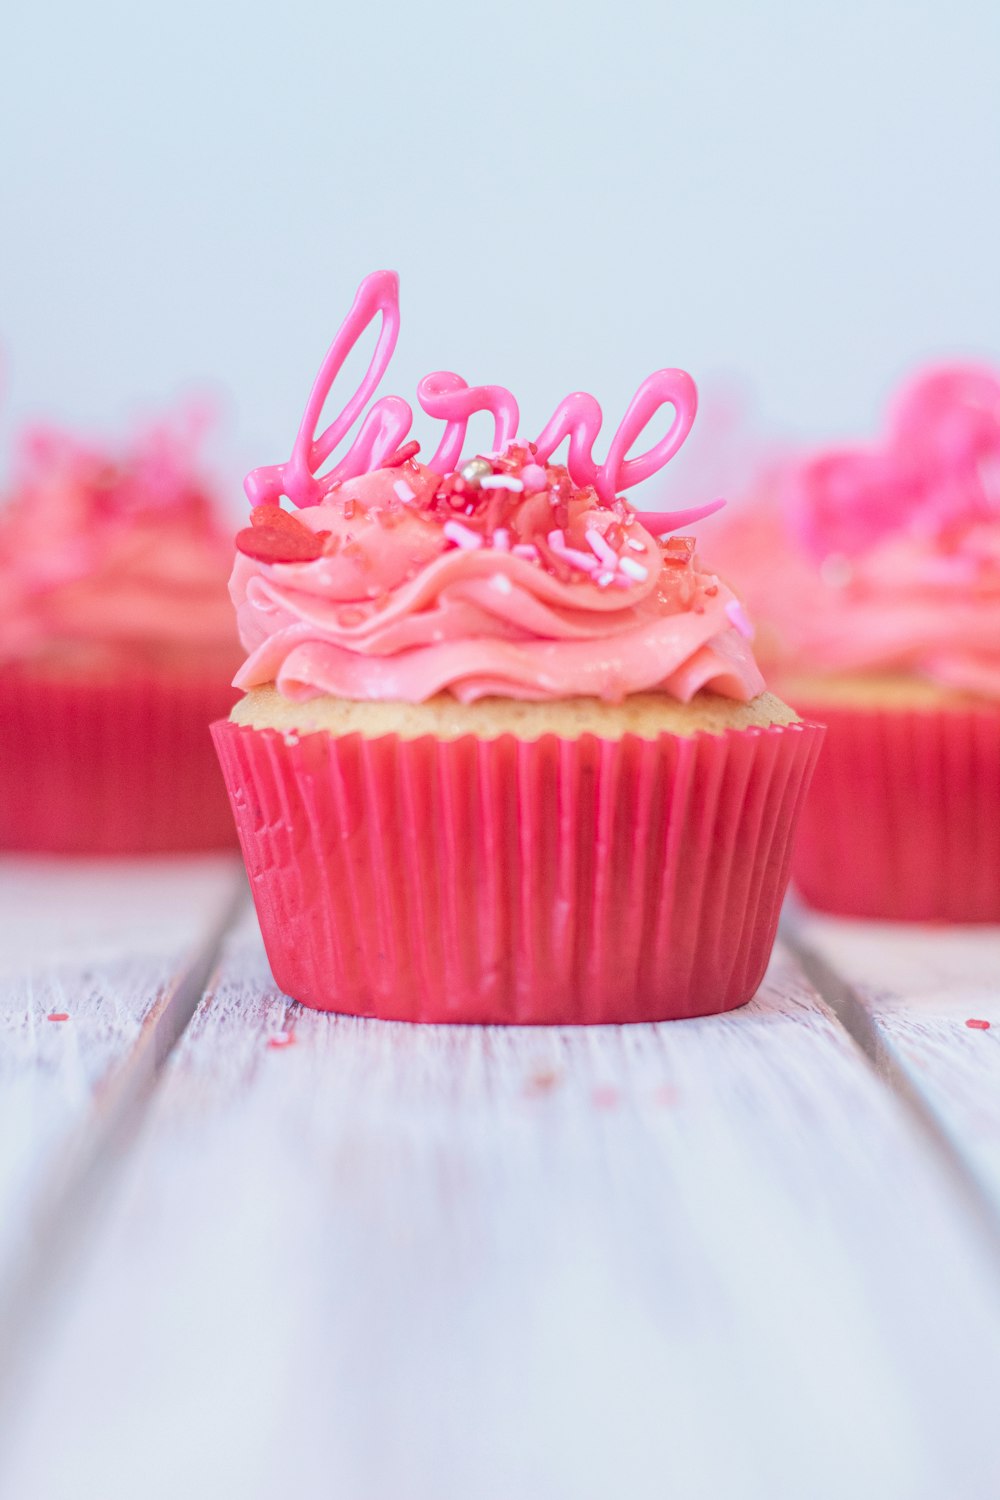 cupcake rosa com cobertura rosa por cima